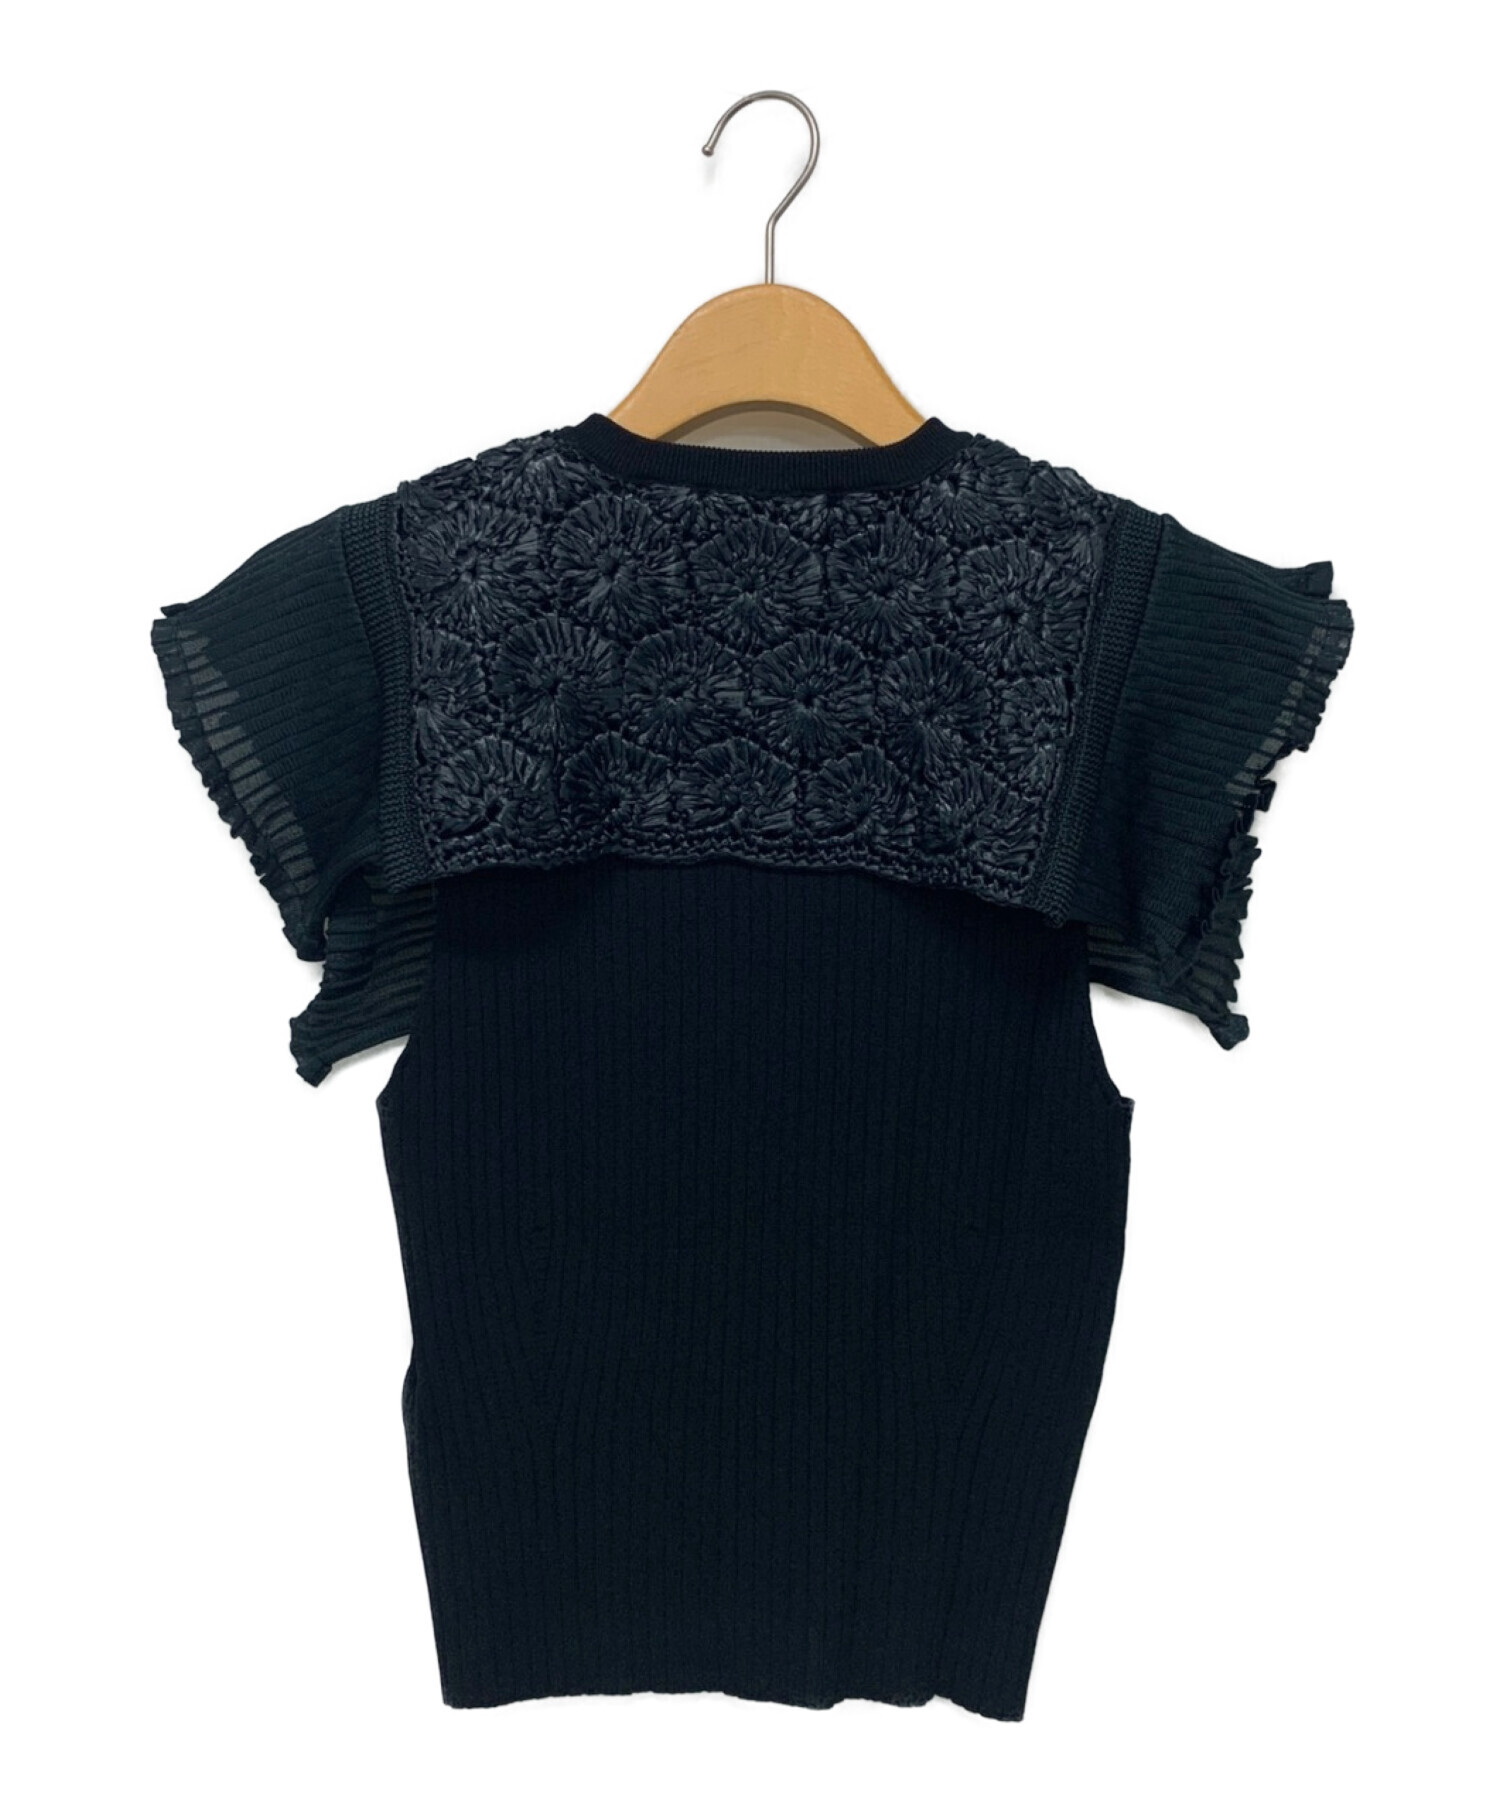 TOGA PULLA Rib Knit Top セーター - ニット/セーター